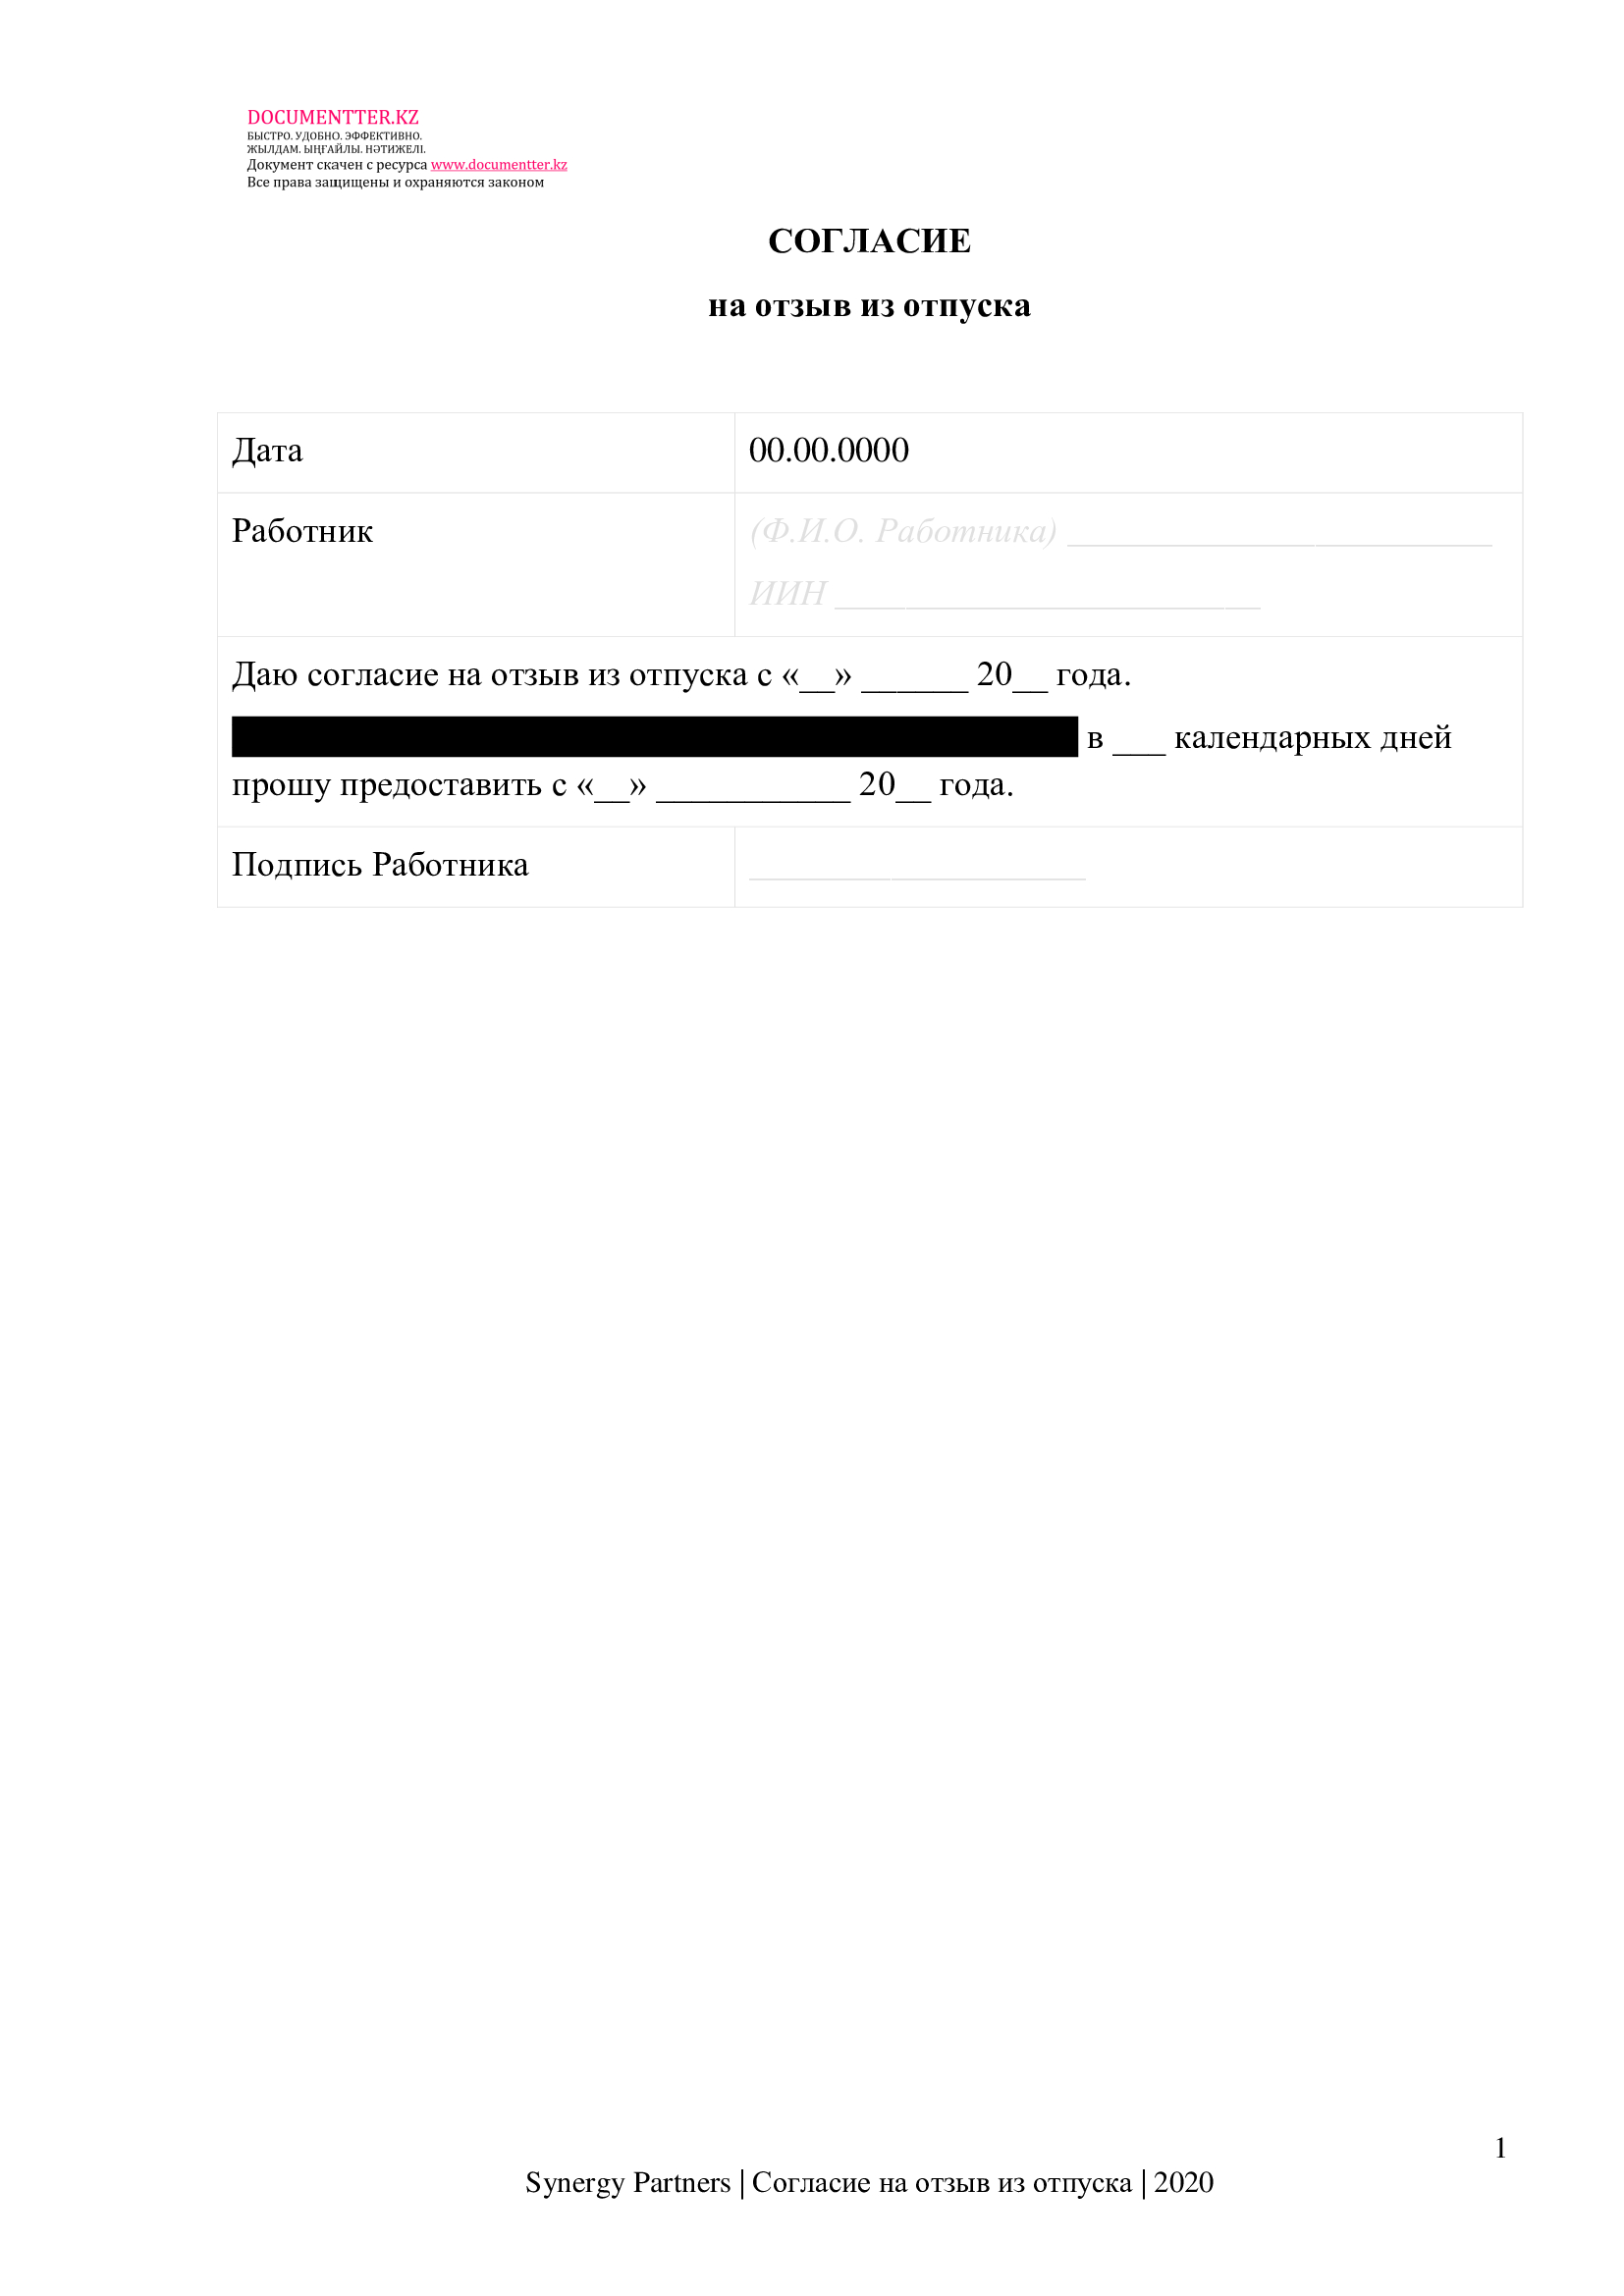 Согласие работника на отзыв из отпуска 2 | documentter.kz в Казахстане 